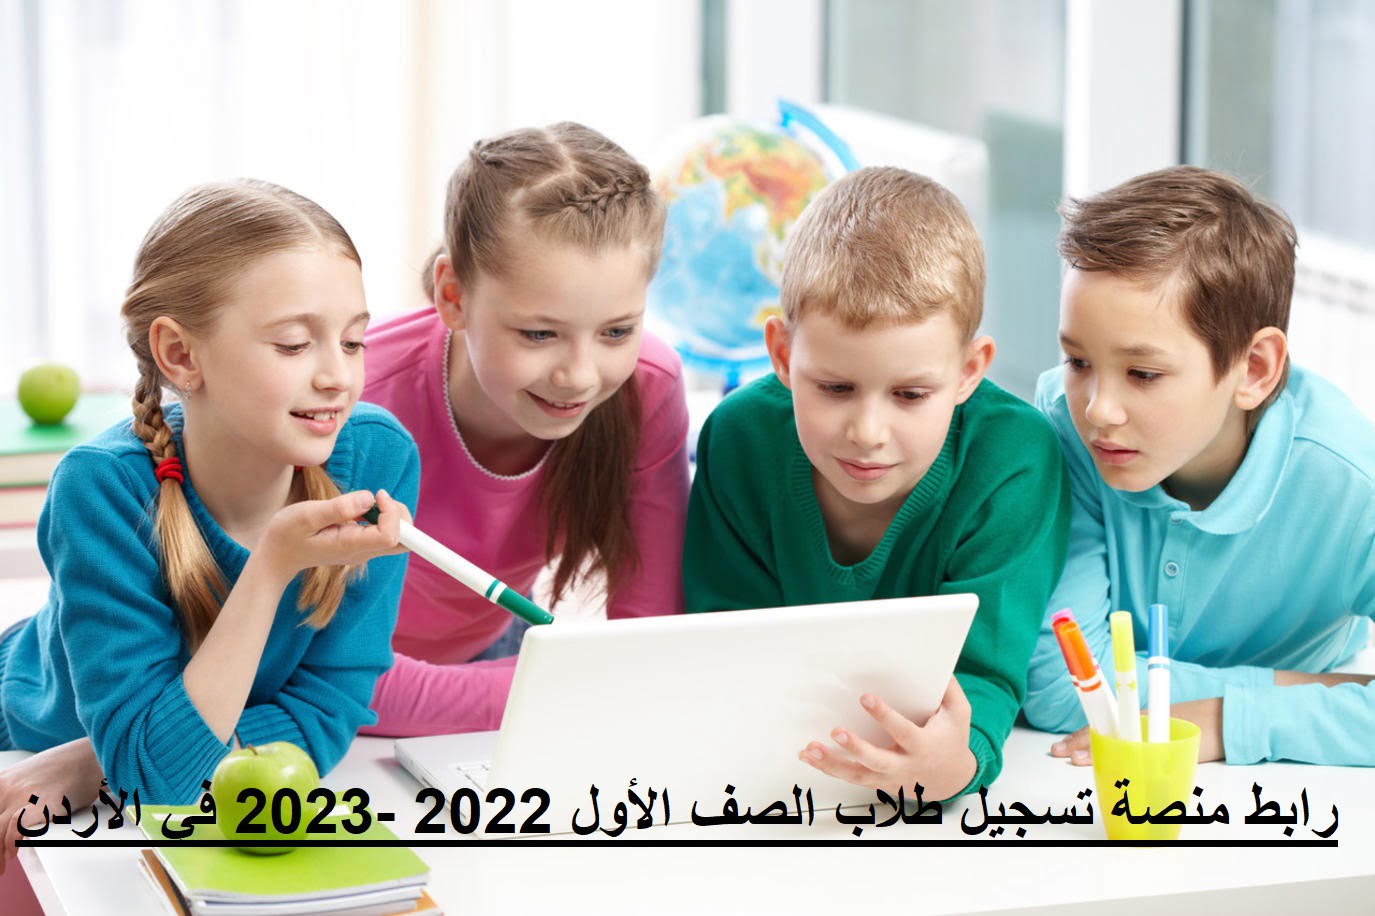 رابط منصة تسجيل طلاب الصف الأول 2022 -2023 في الأردن